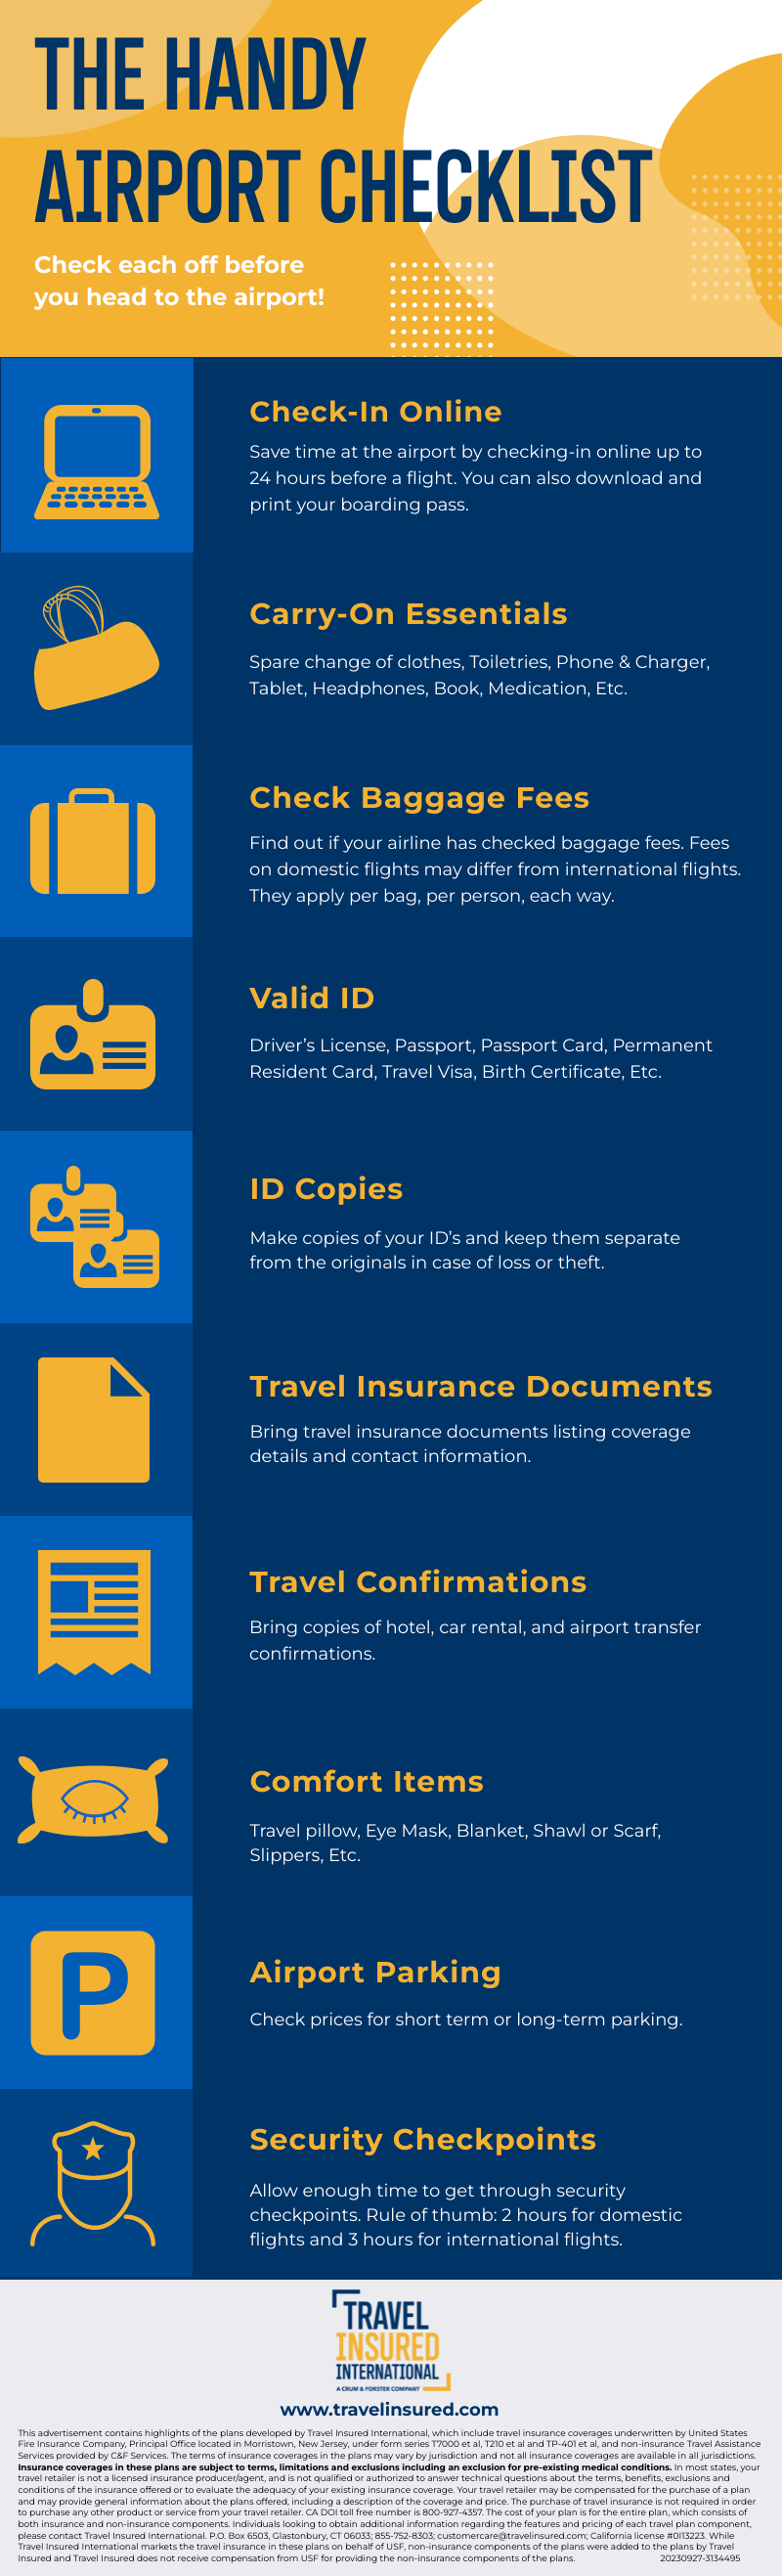 Airport Checklist